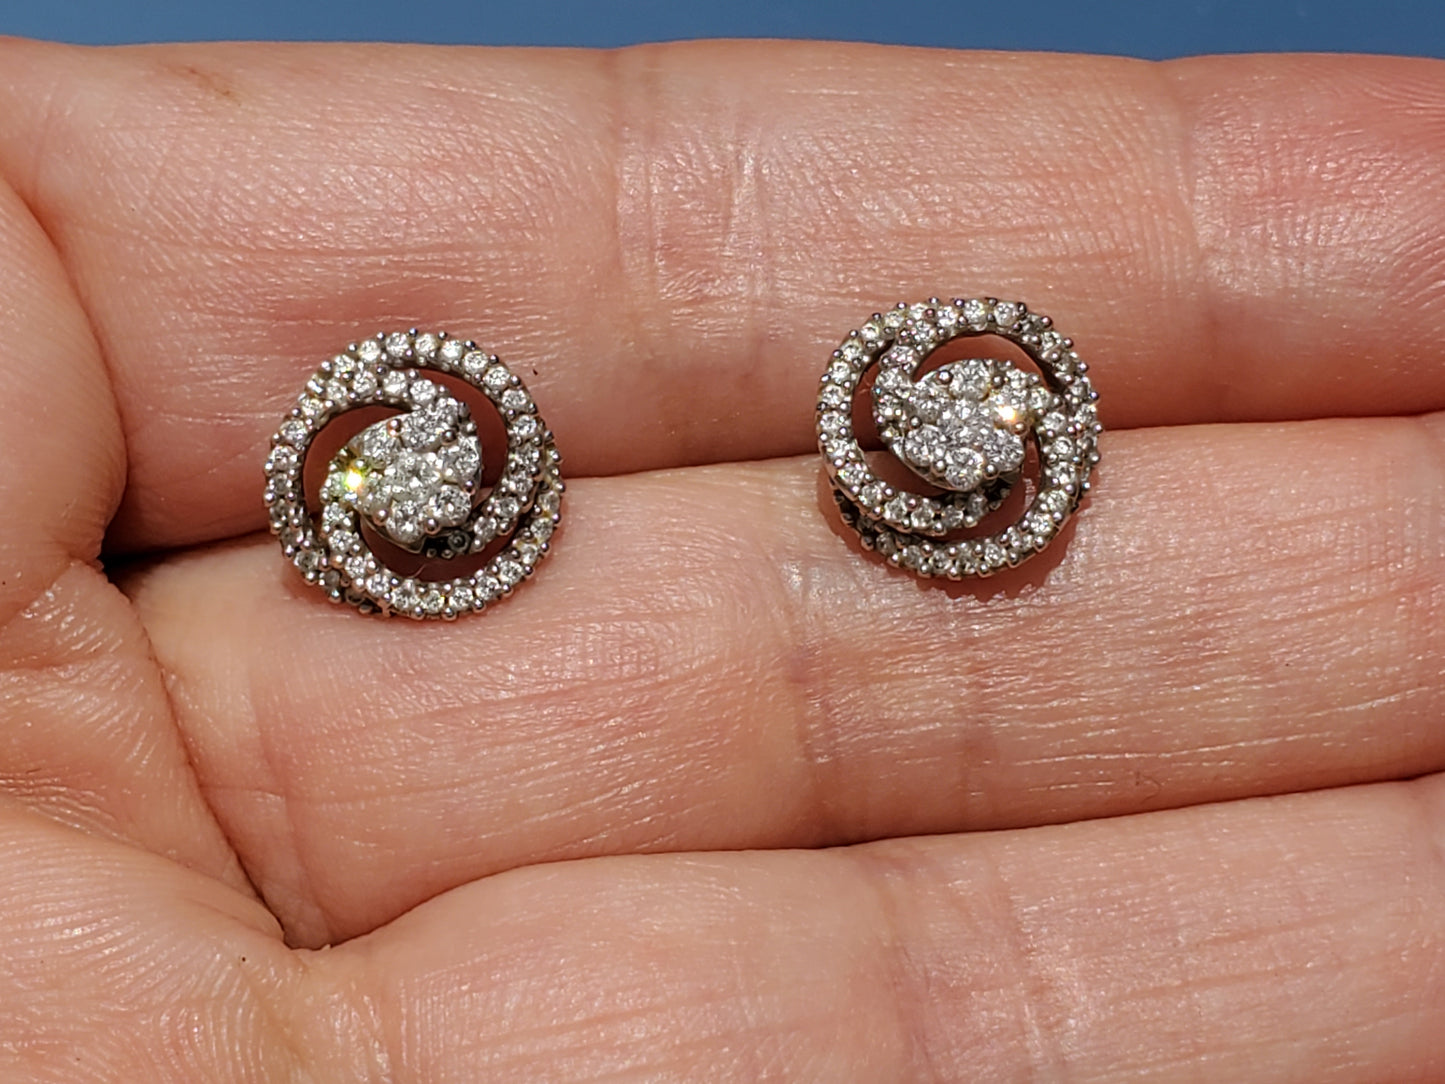 14k White Gold Pavé Diamond Flower Stud Earrings